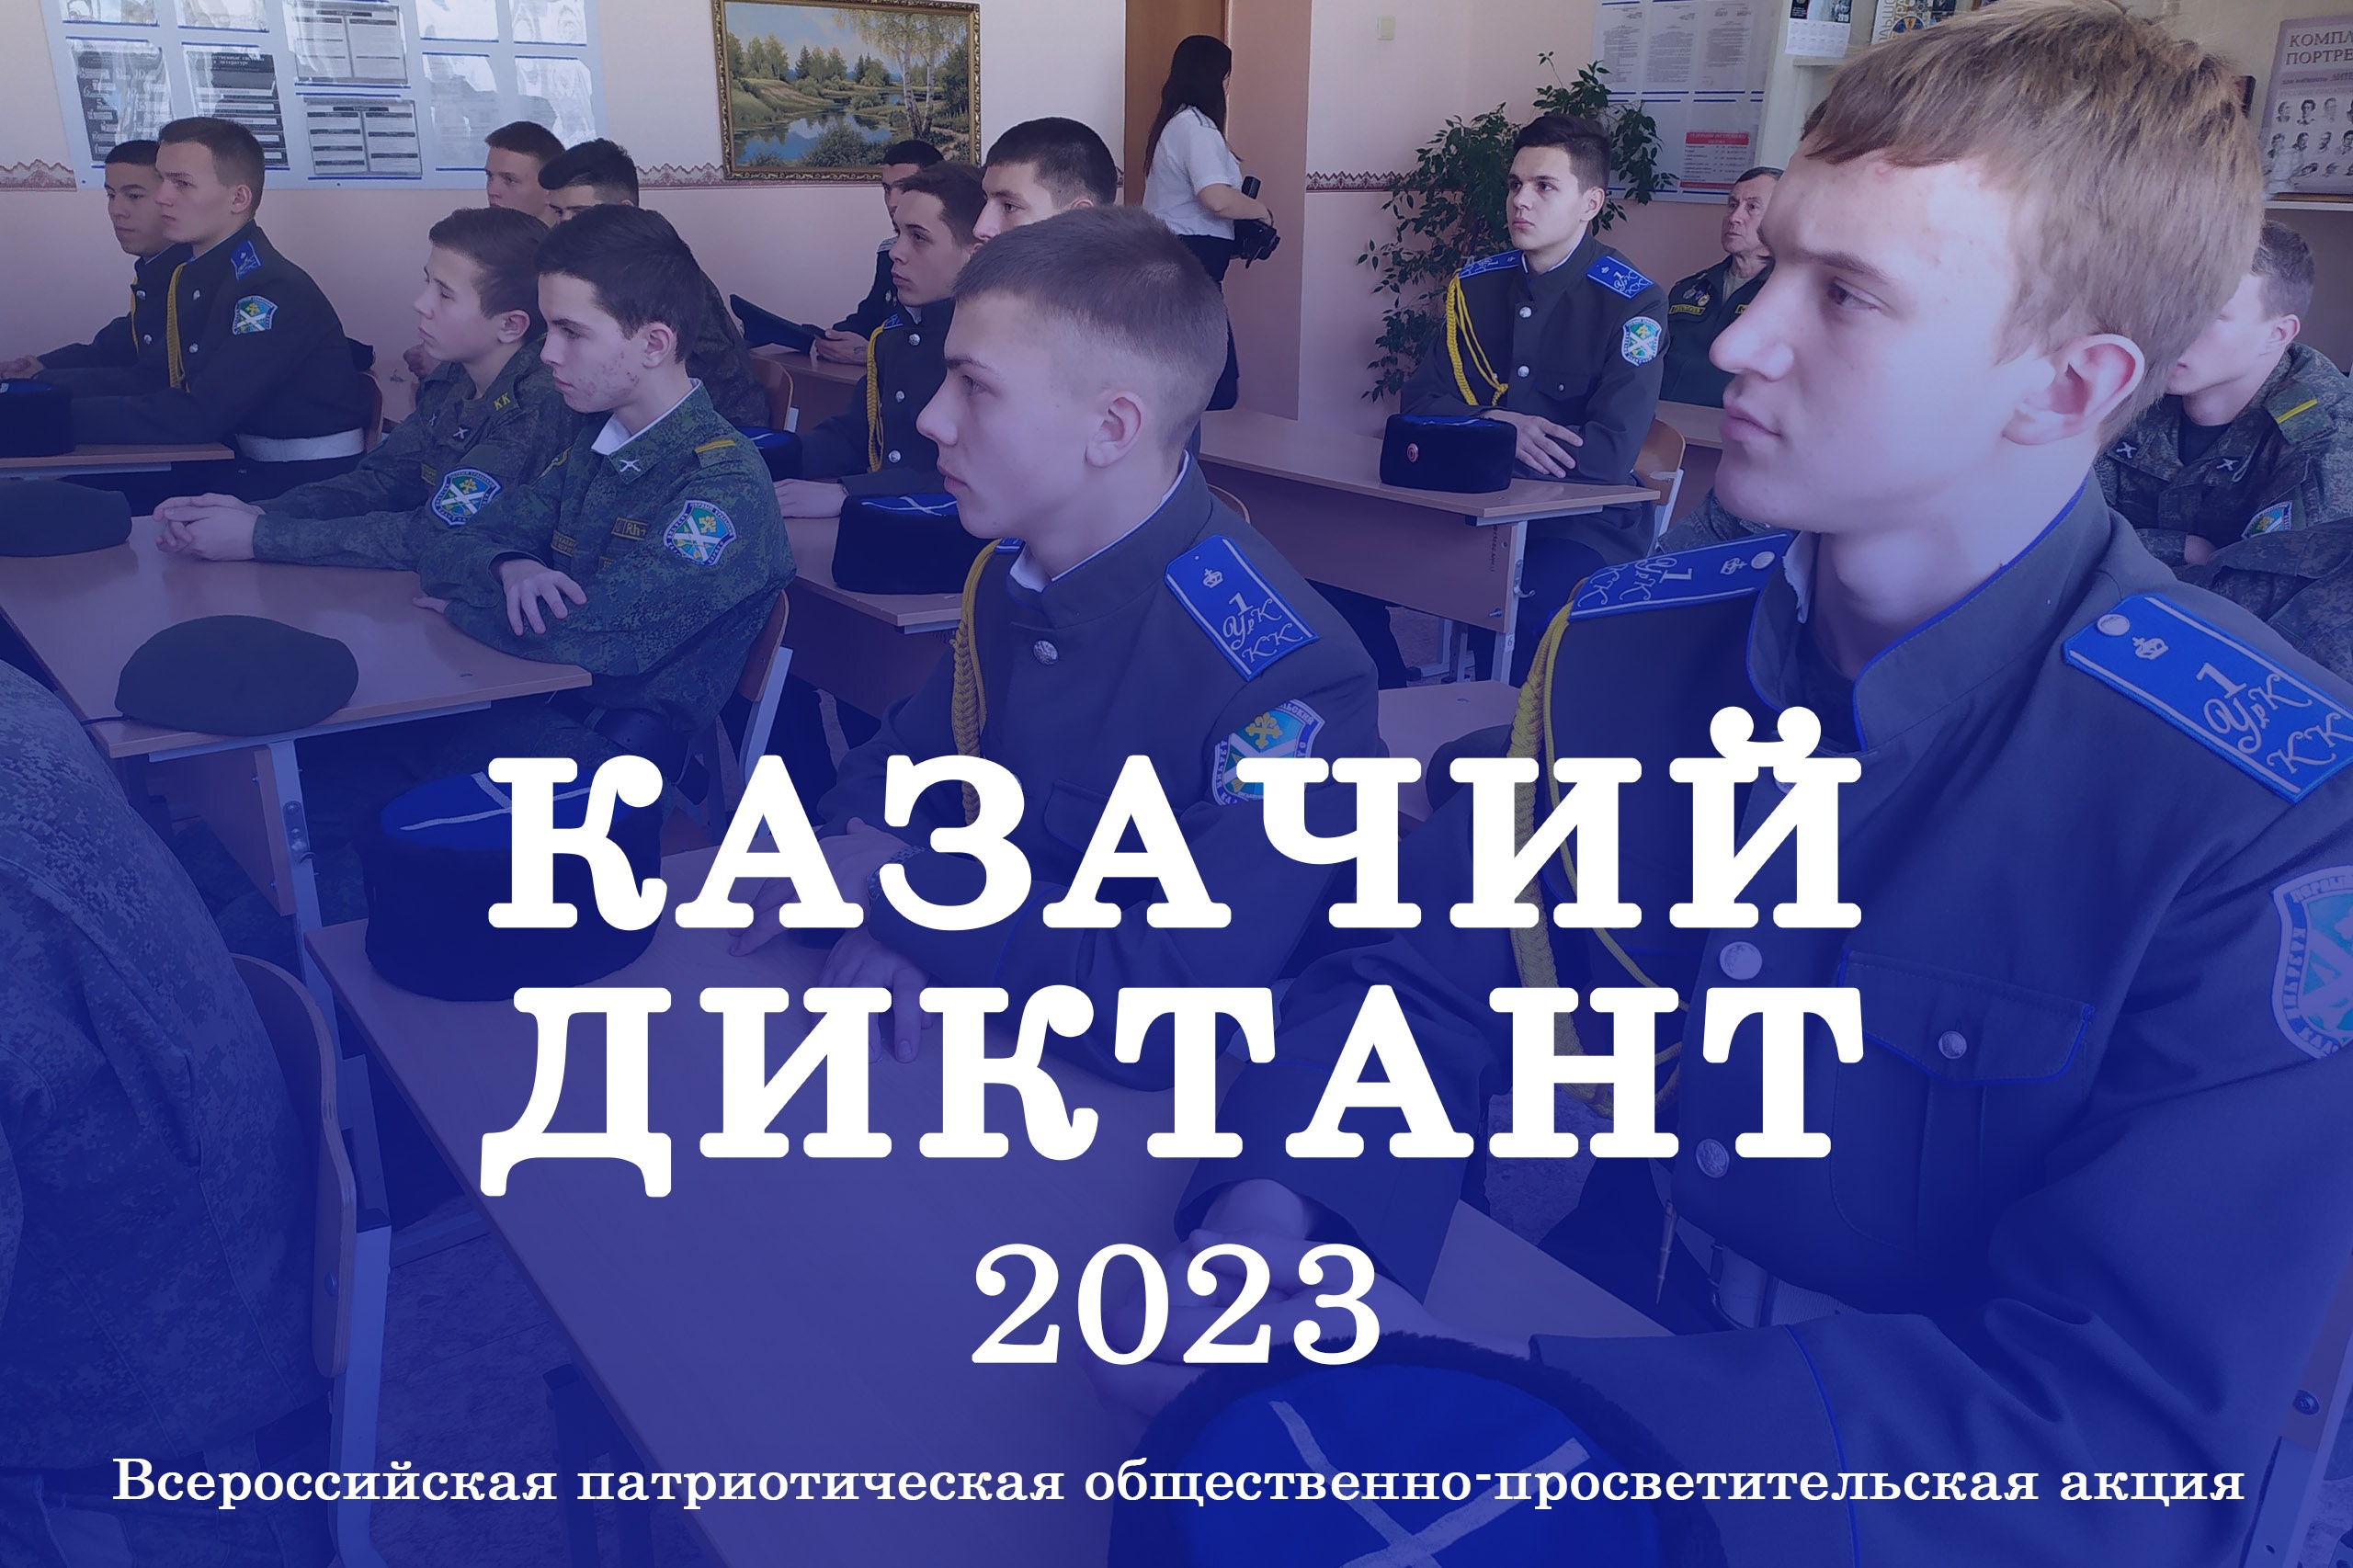 Туляков приглашают принять участие в Казачьем диктанте.